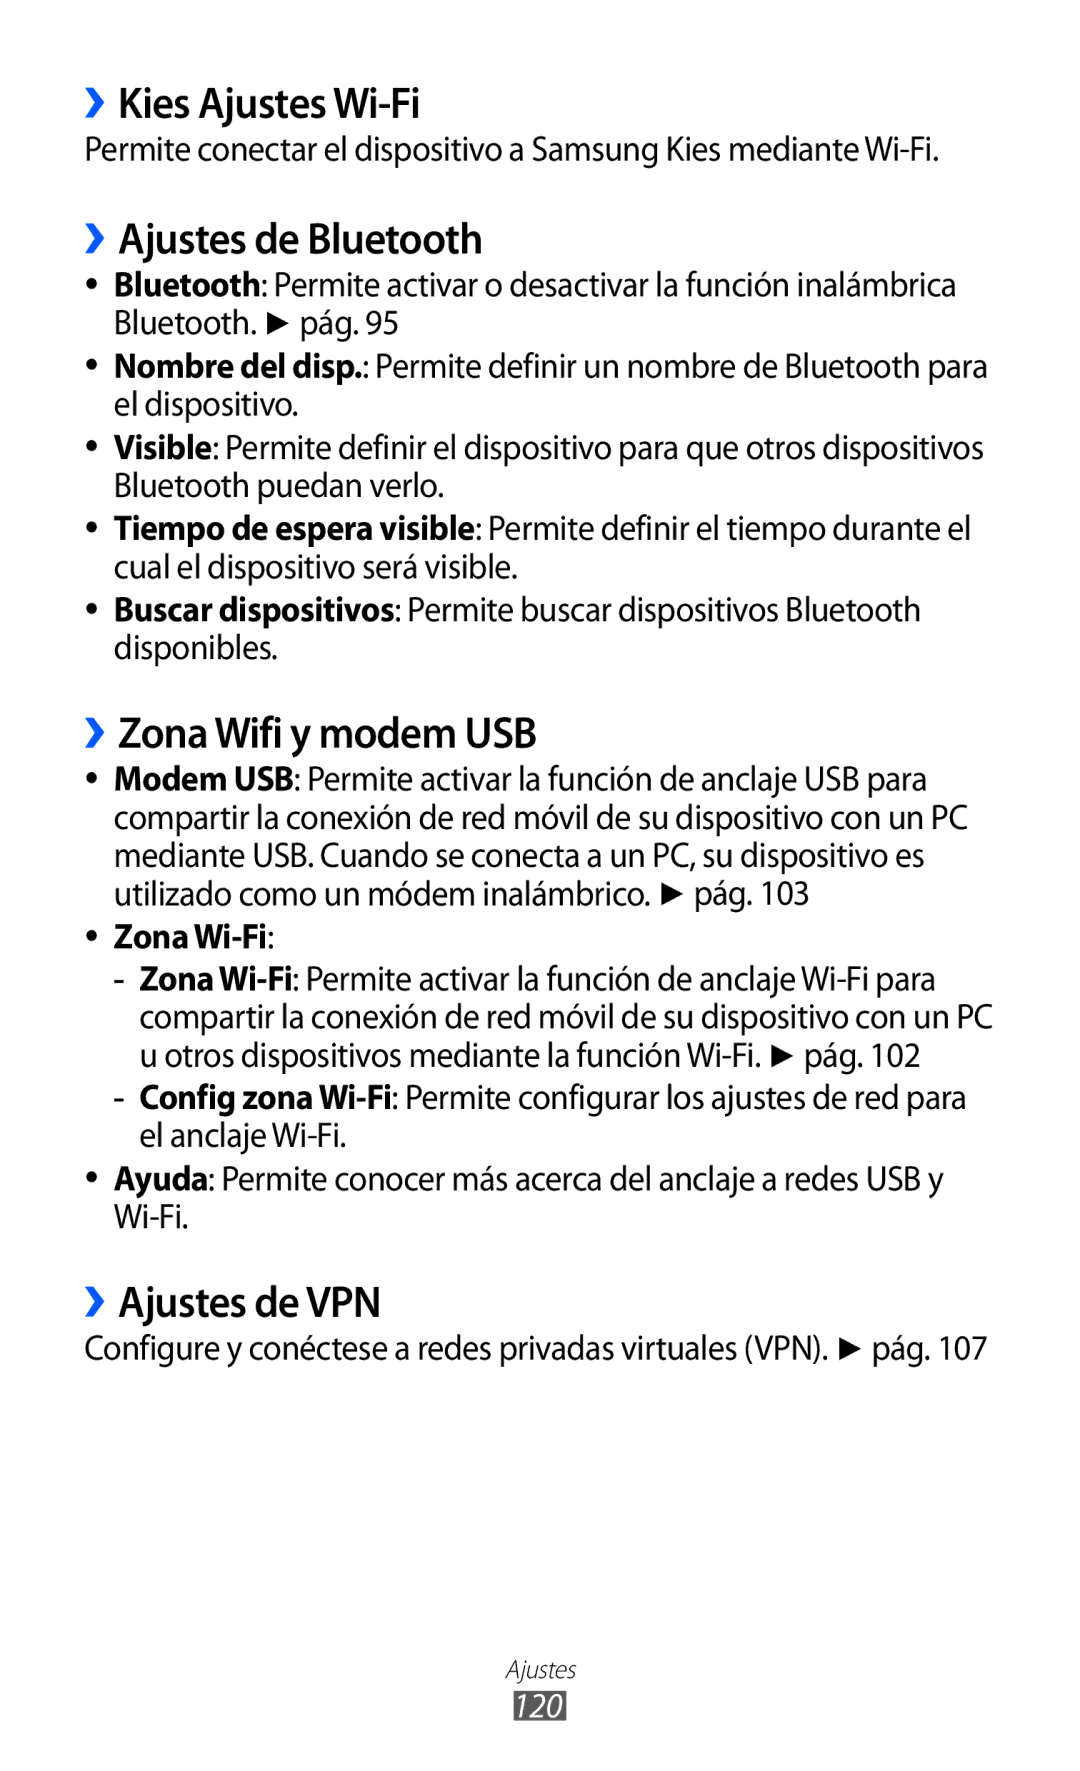 Samsung GT-S6500RWDTMN ››Kies Ajustes Wi-Fi, ››Ajustes de Bluetooth, ››Zona Wifi y modem USB, ››Ajustes de VPN, Zona Wi-Fi 